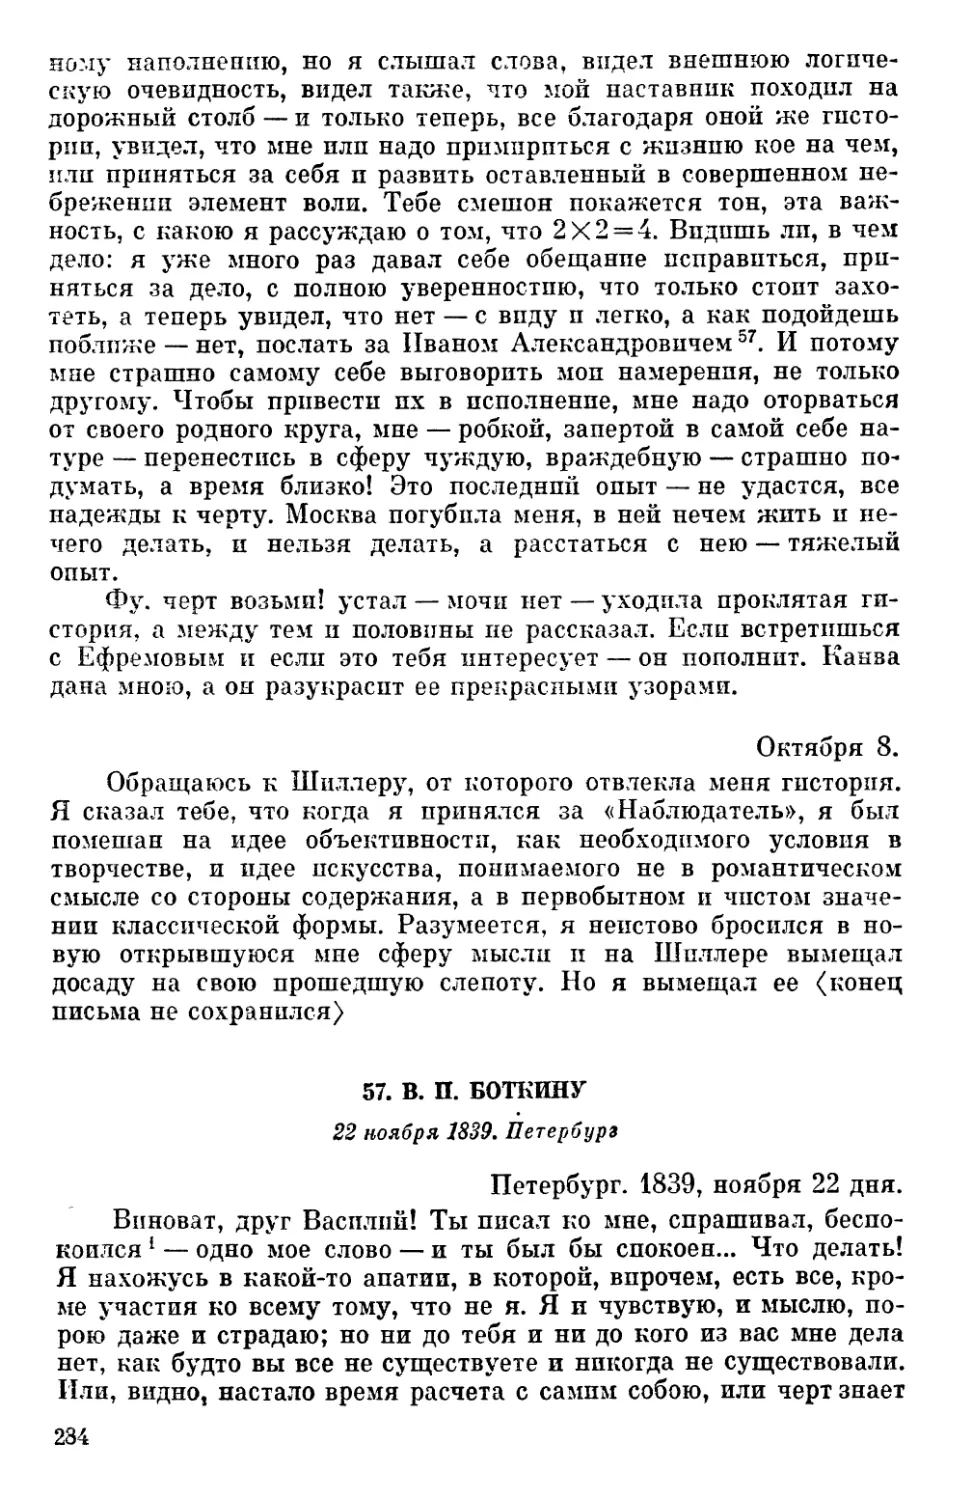 57. В. П. Боткину. 22 ноября 1839